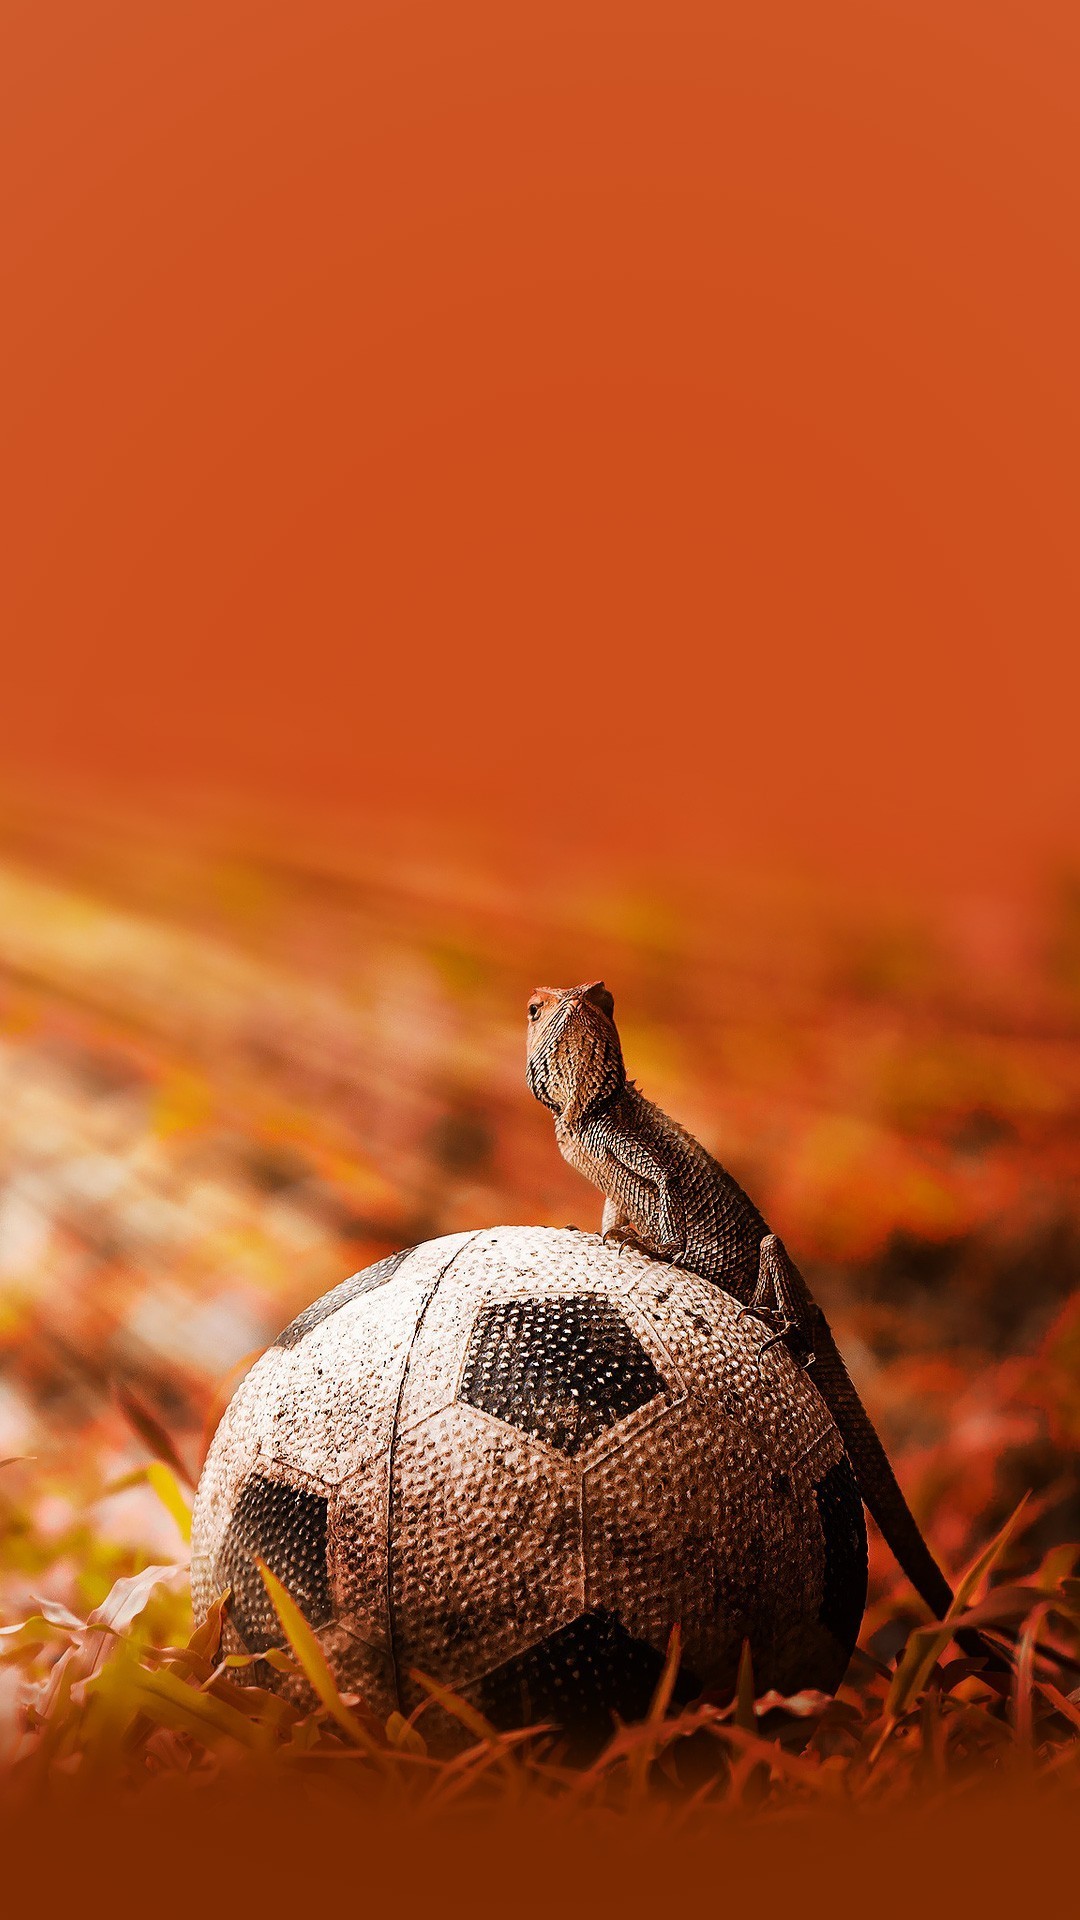 1080x1920 Iguana on a soccer ball Wallpaper